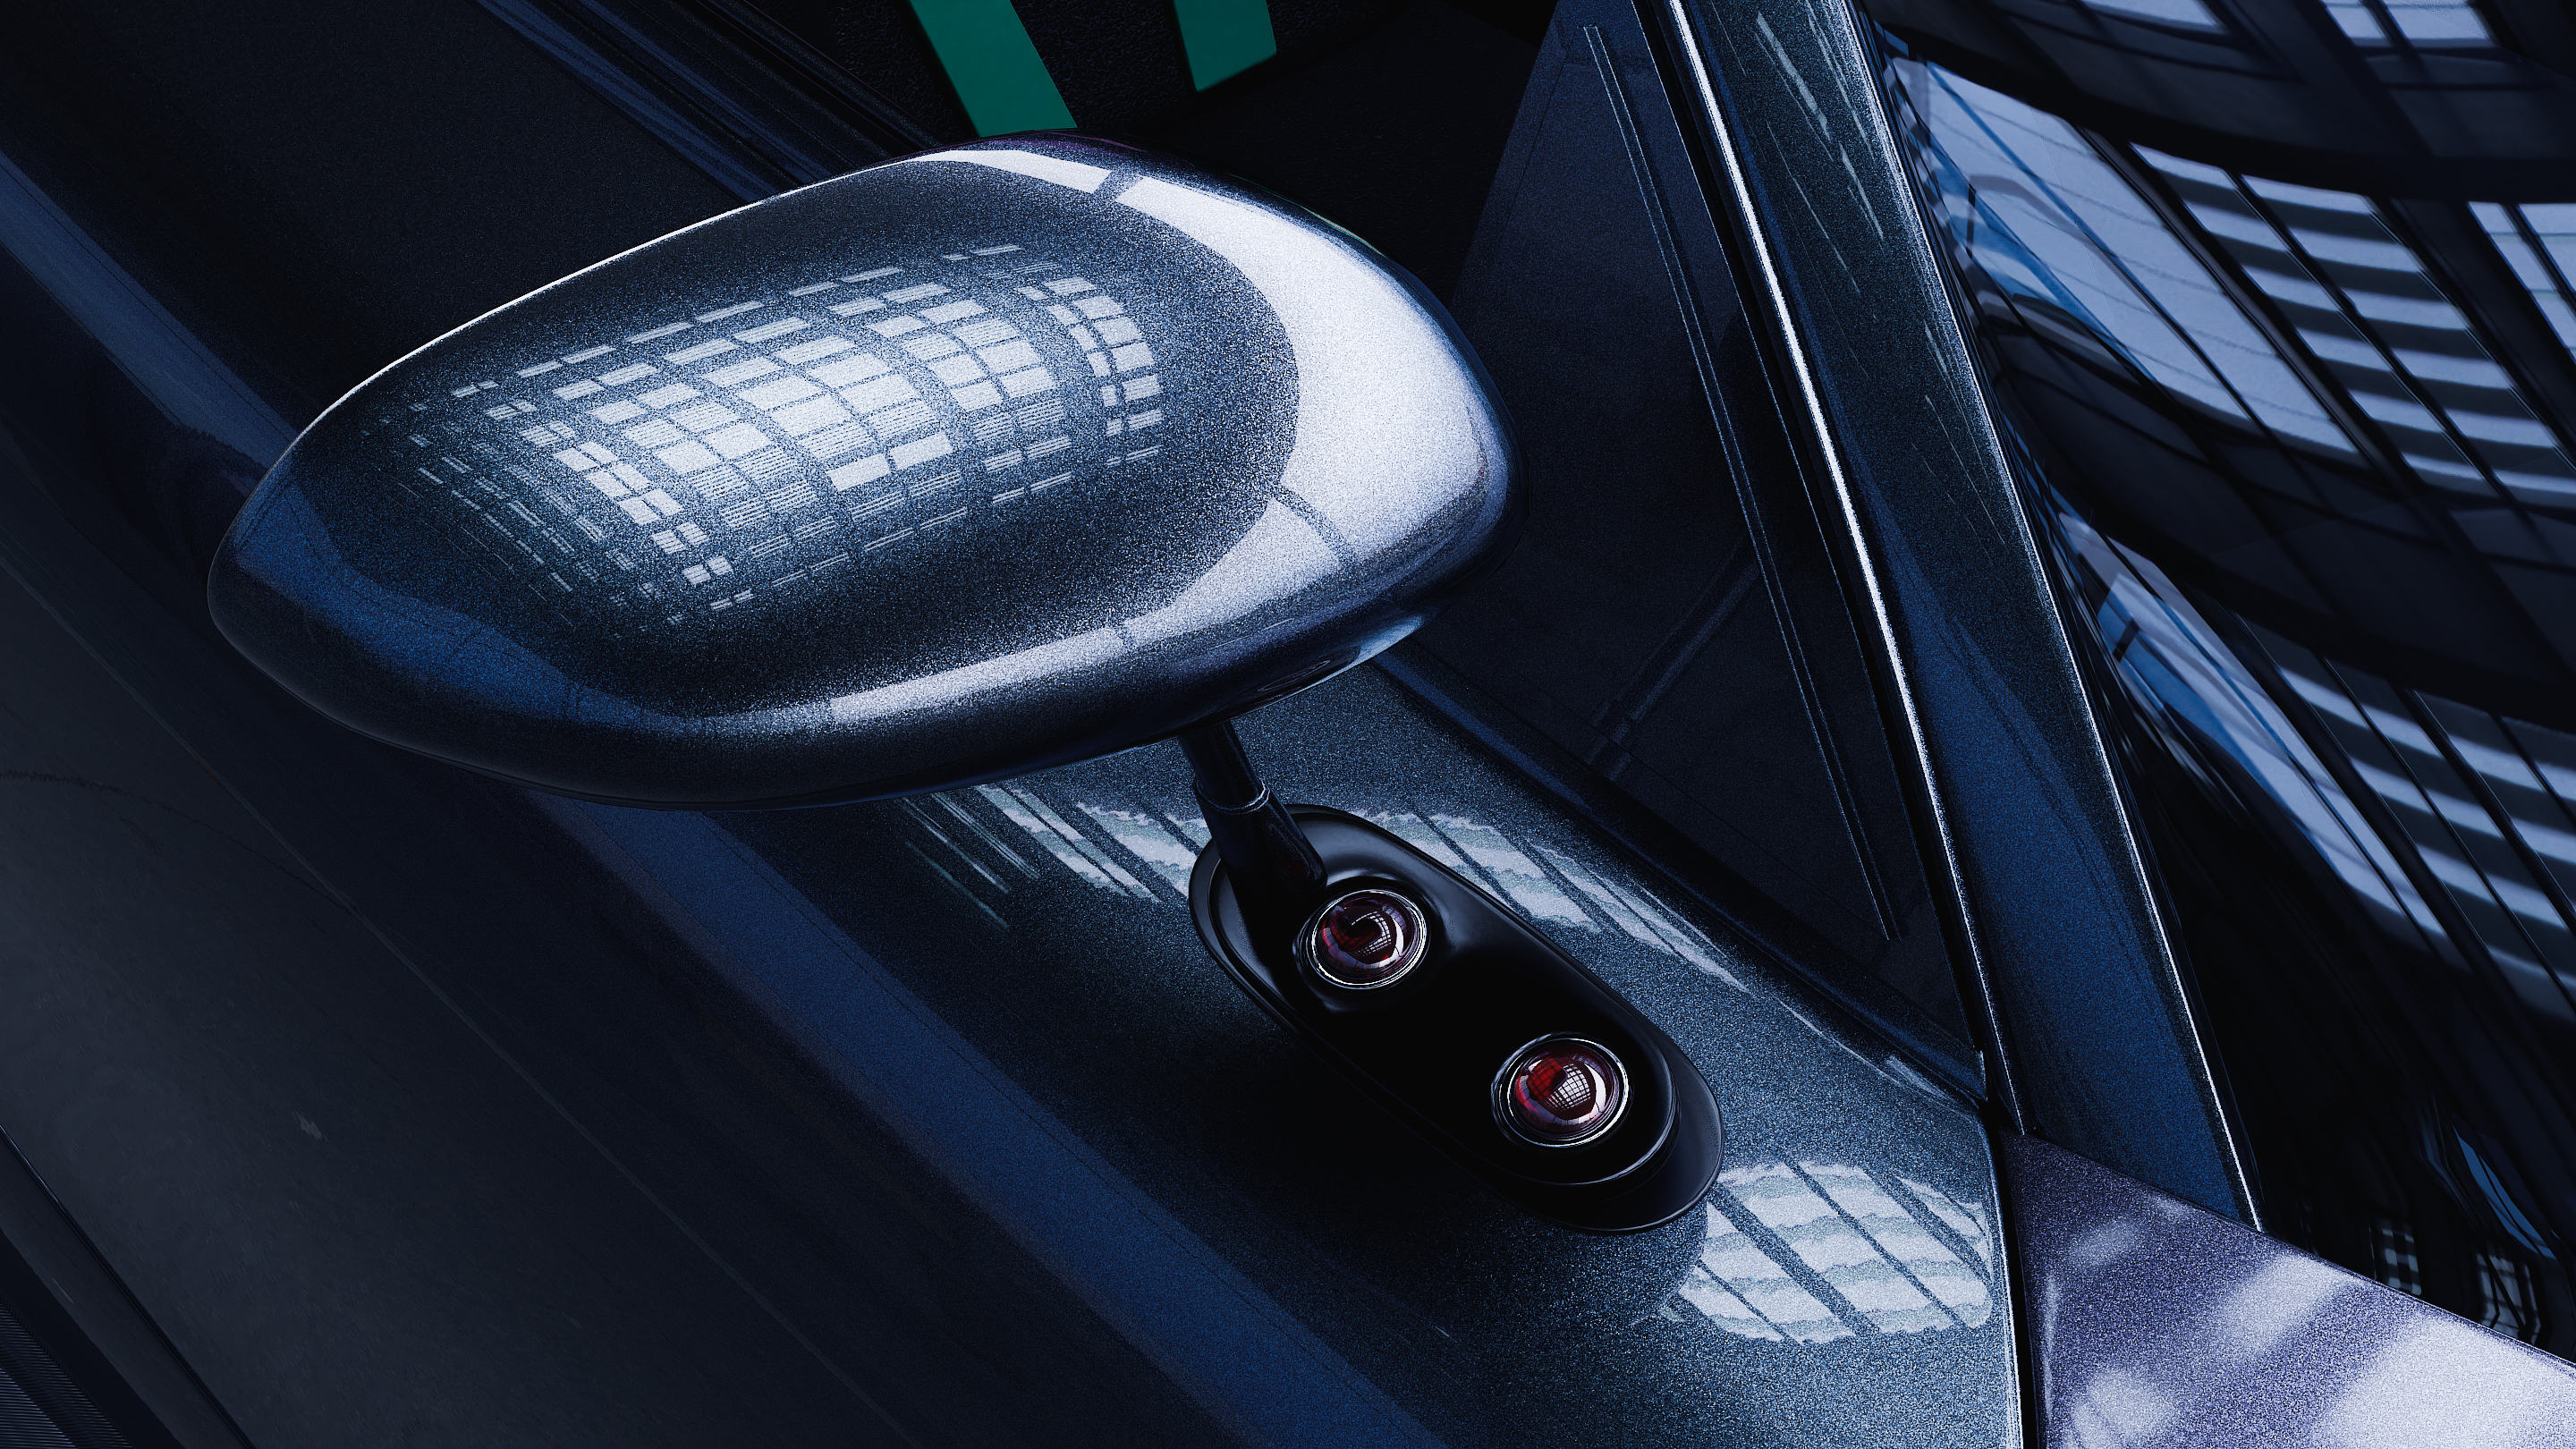 Mazda RX-7 in Blender cycles render resim